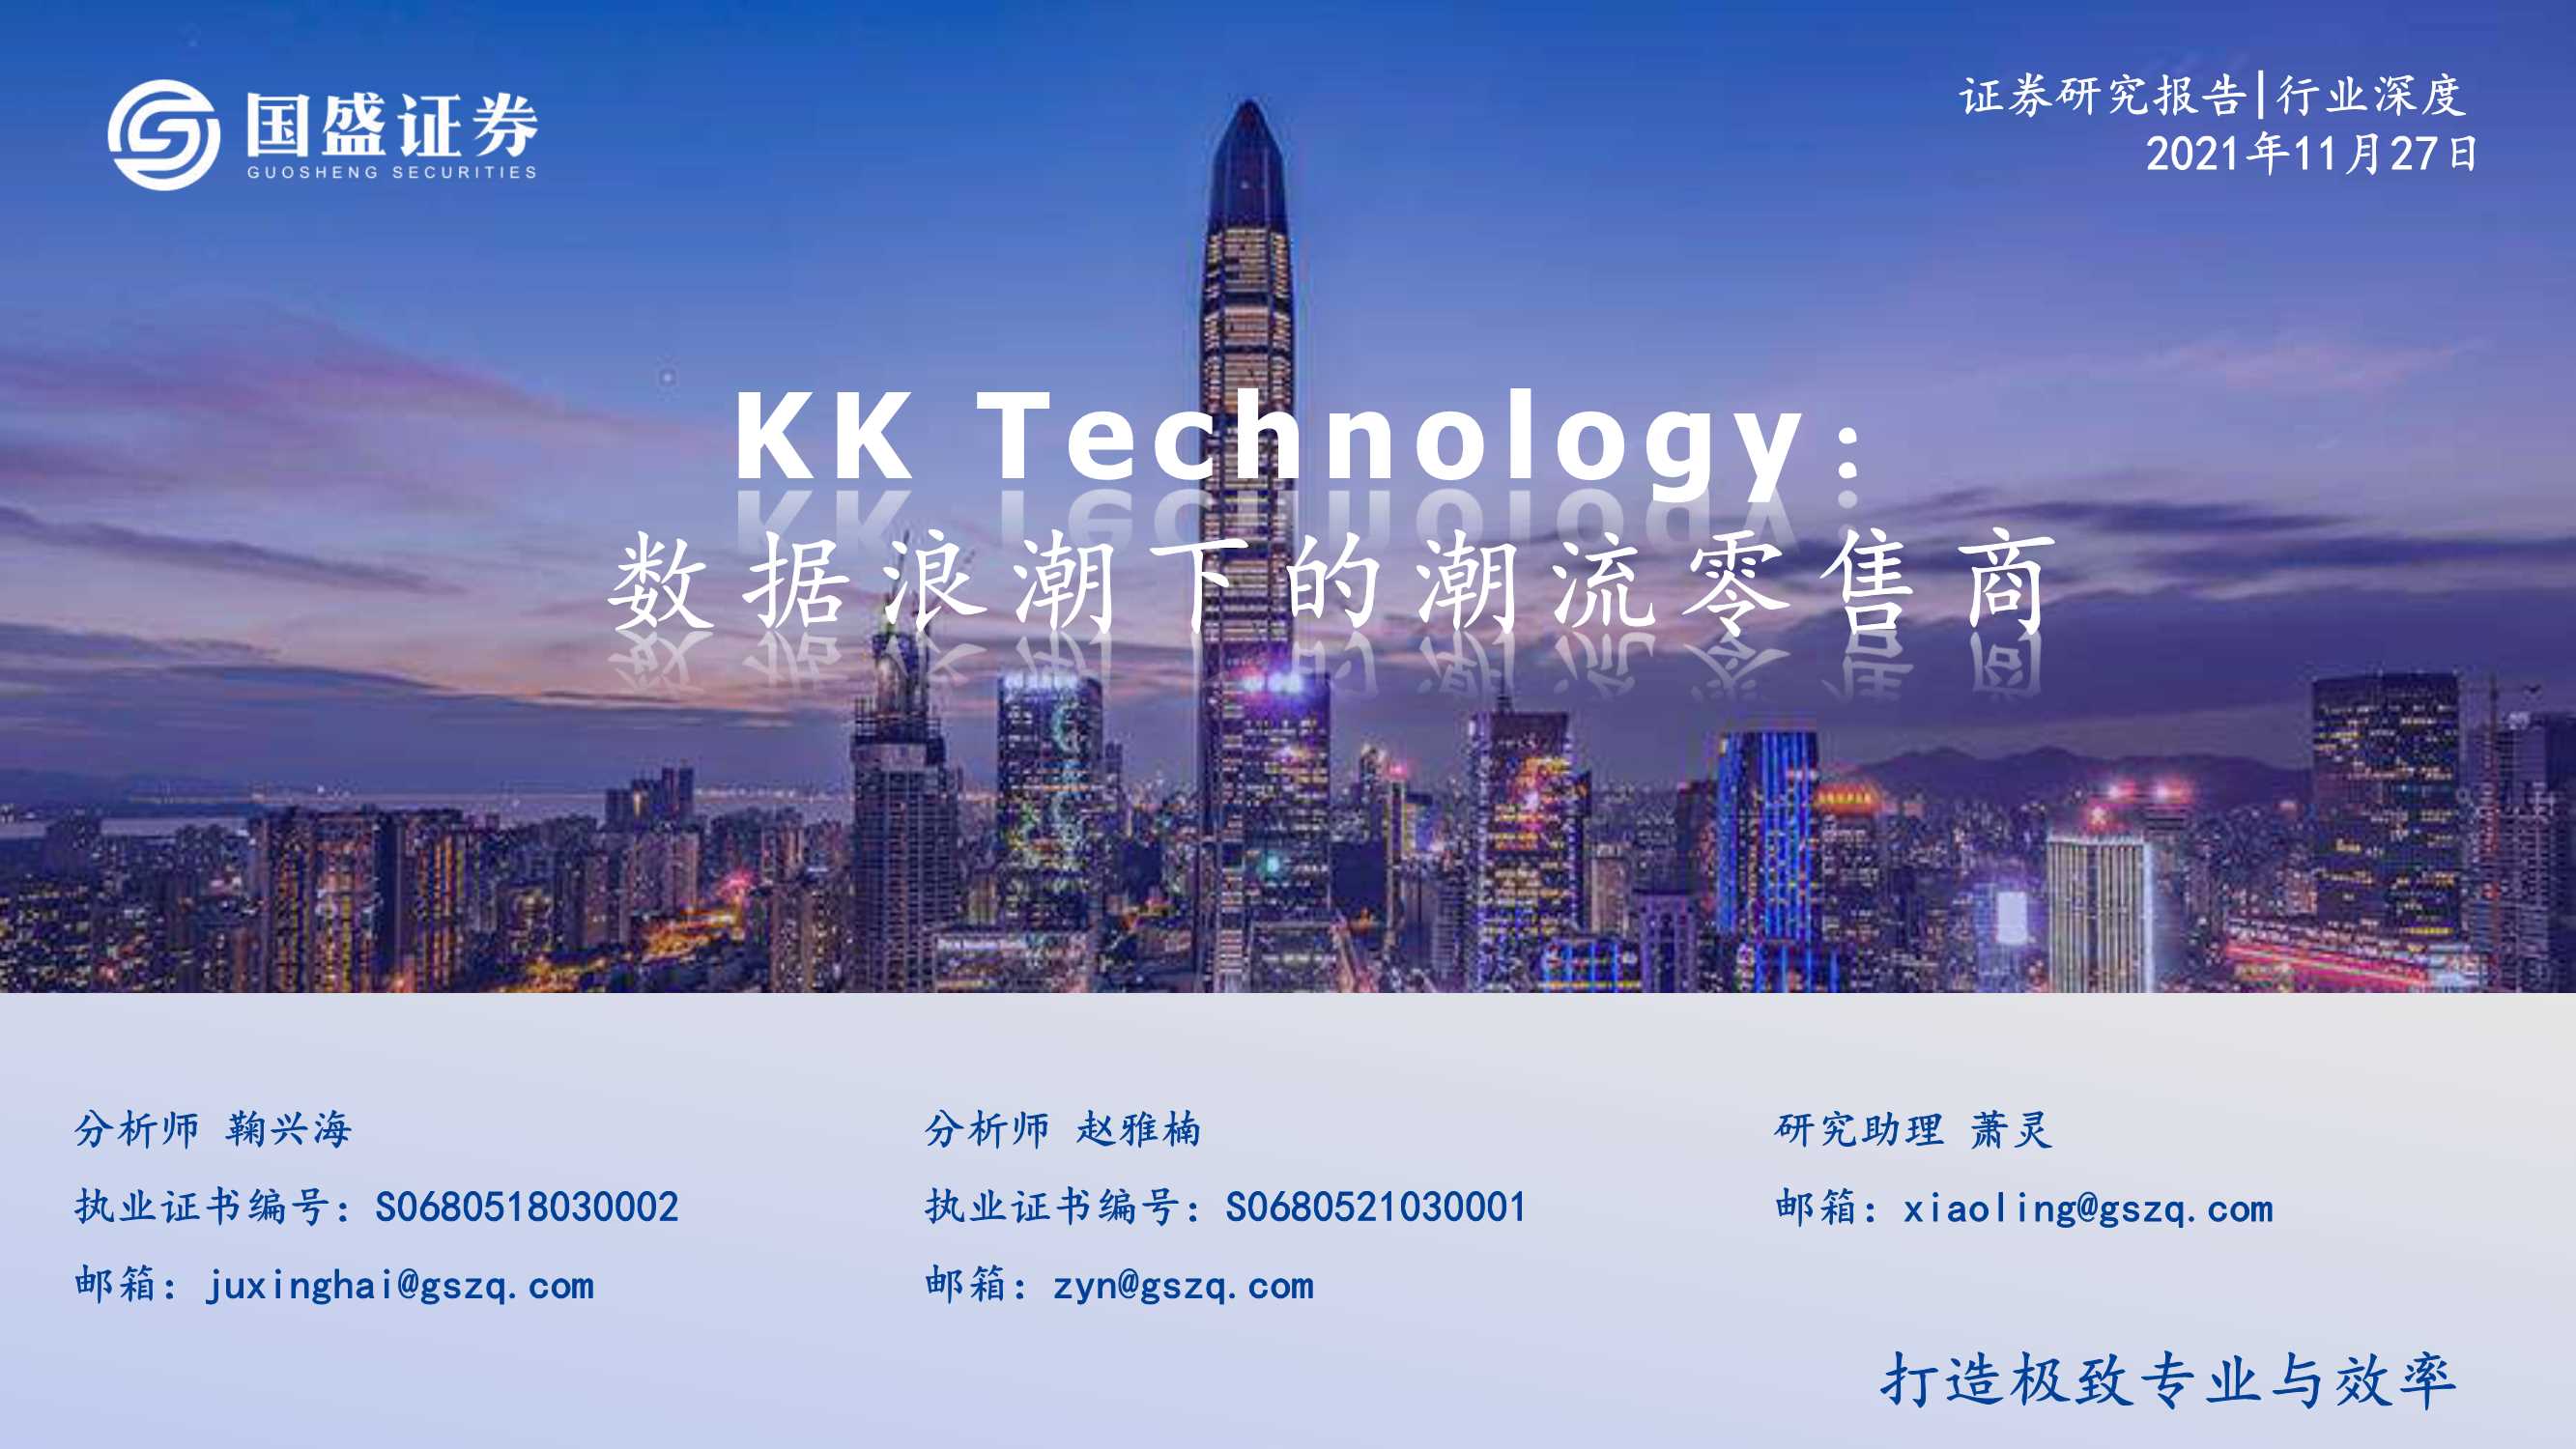 国盛证券-KK Technology-1716.HK-数据浪潮下的潮流零售商-20211127-38页